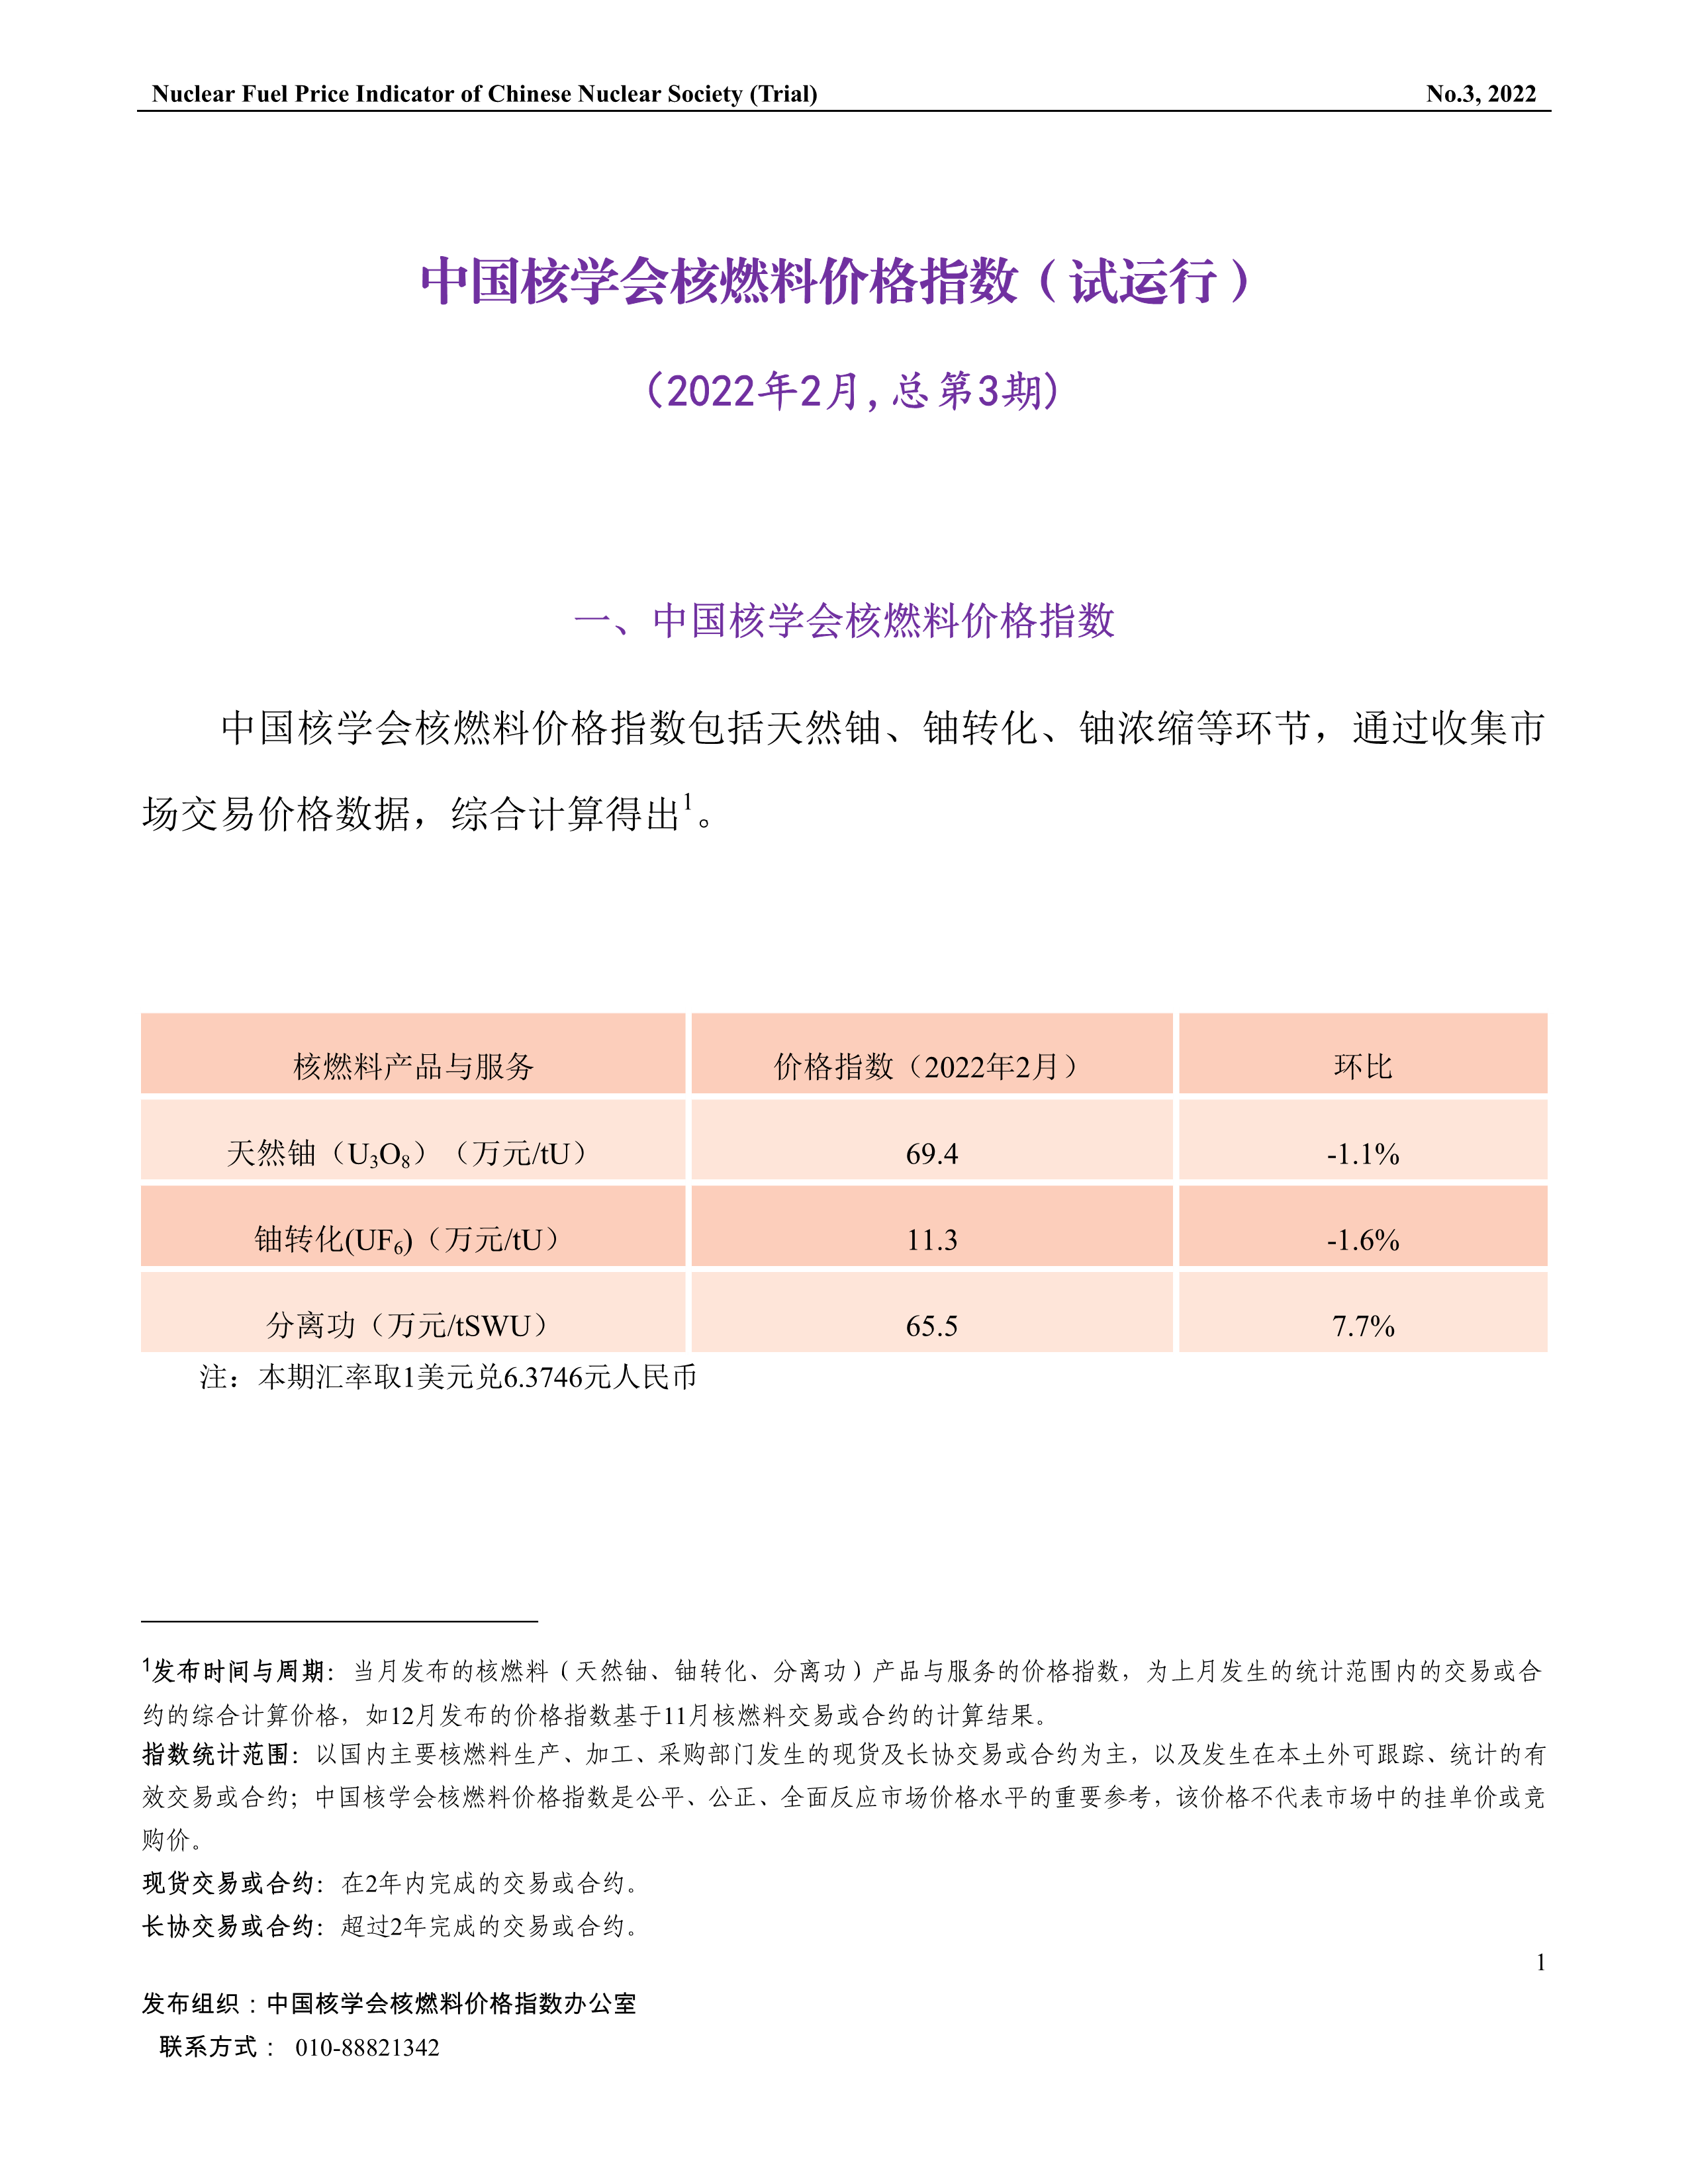 中国核学会核燃料价格指数(试运行)（2022年2月,总第3期）11-1.png